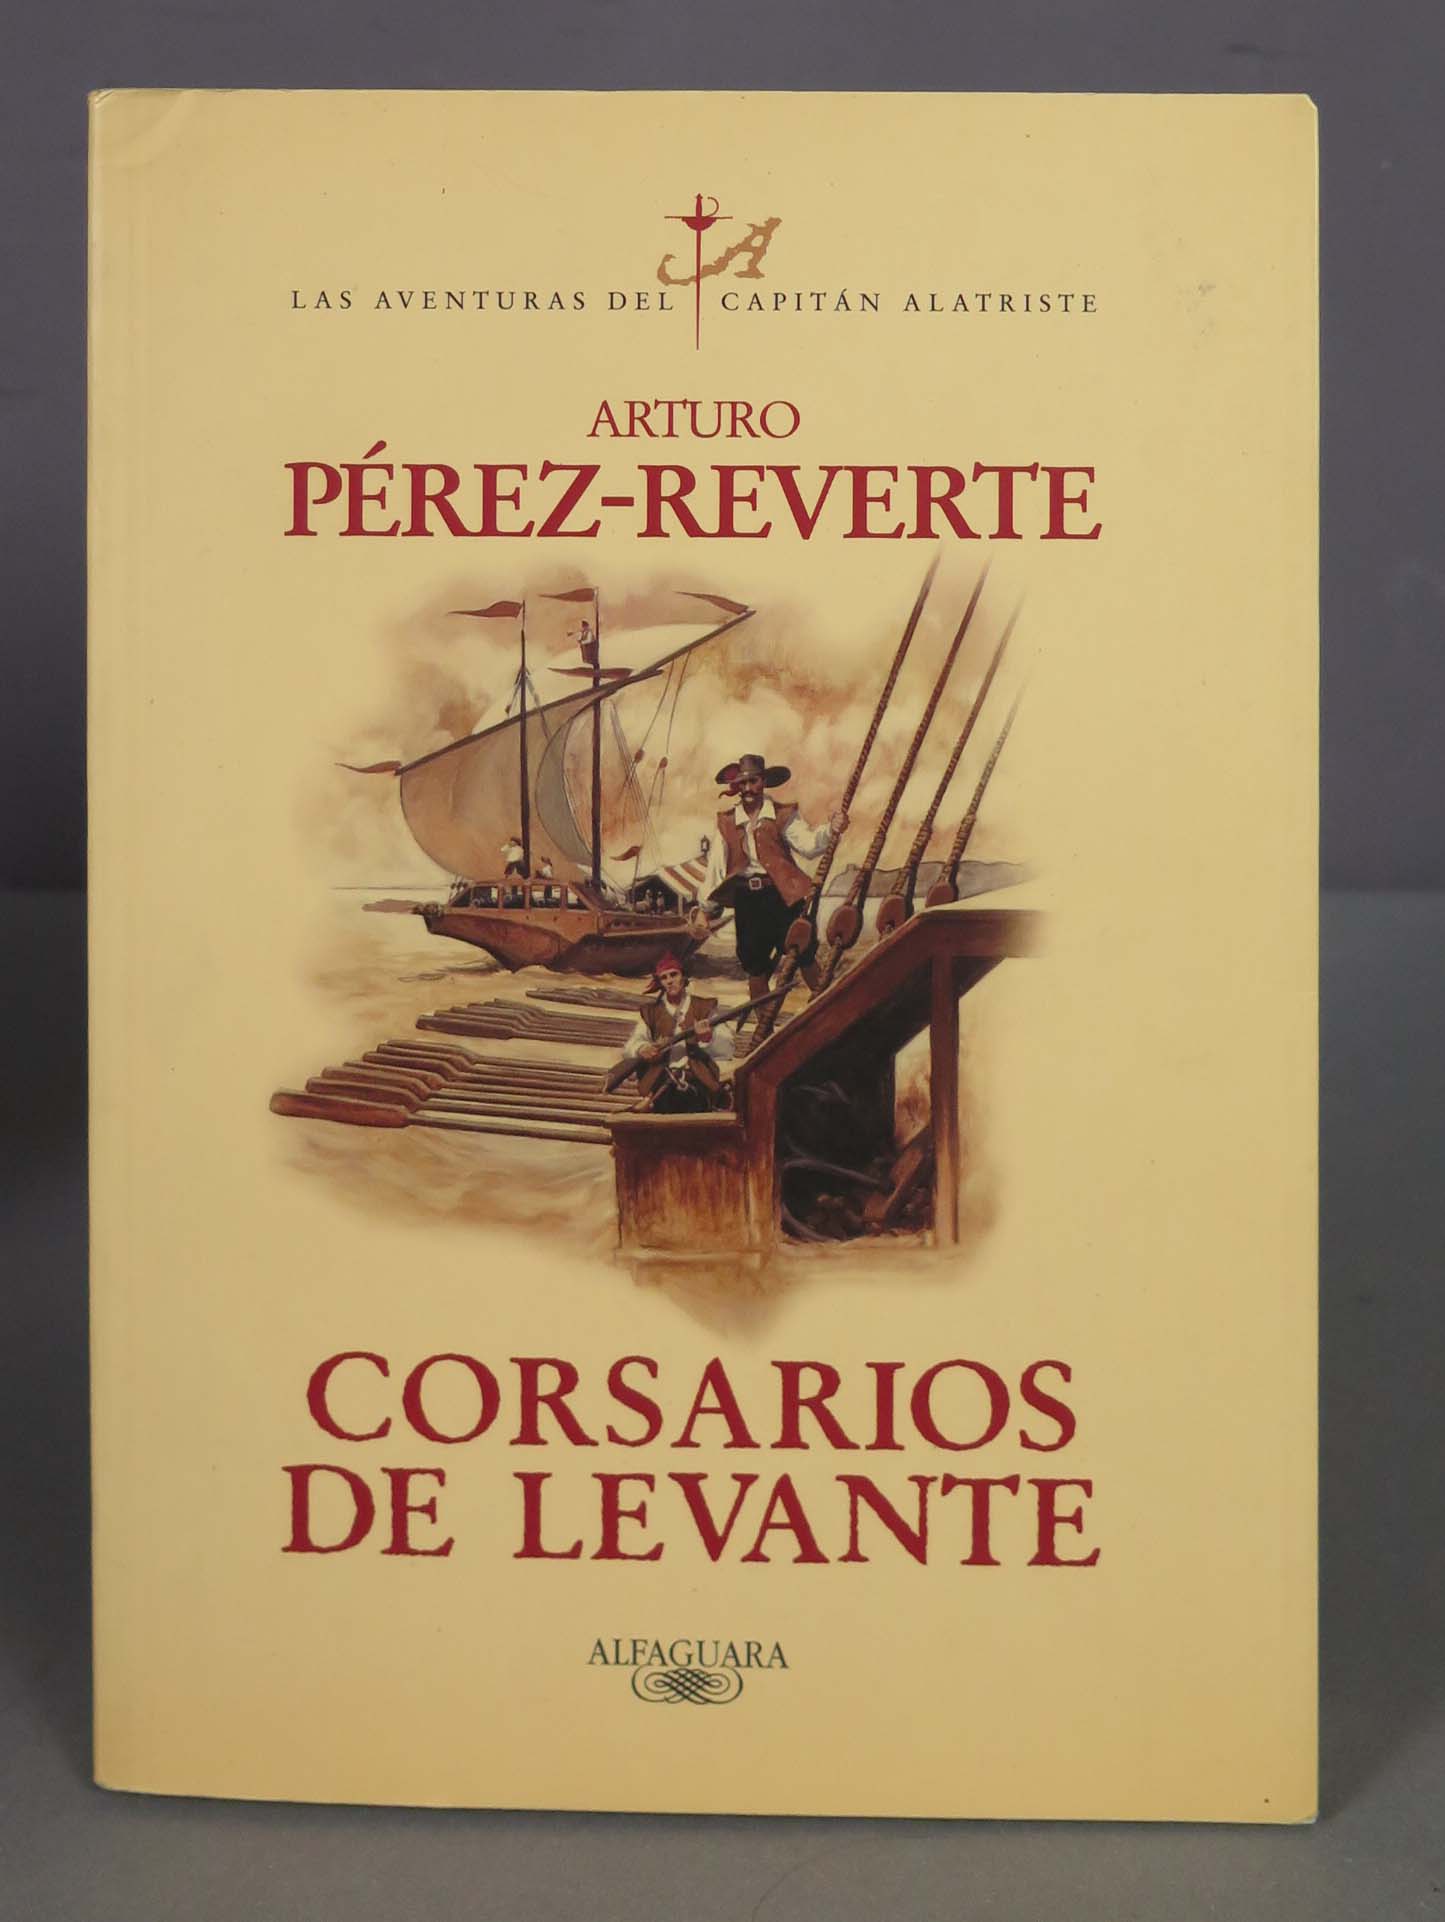 Corsarios de Levante. Arturo Pérez-Reverte - Arturo Pérez-Reverte